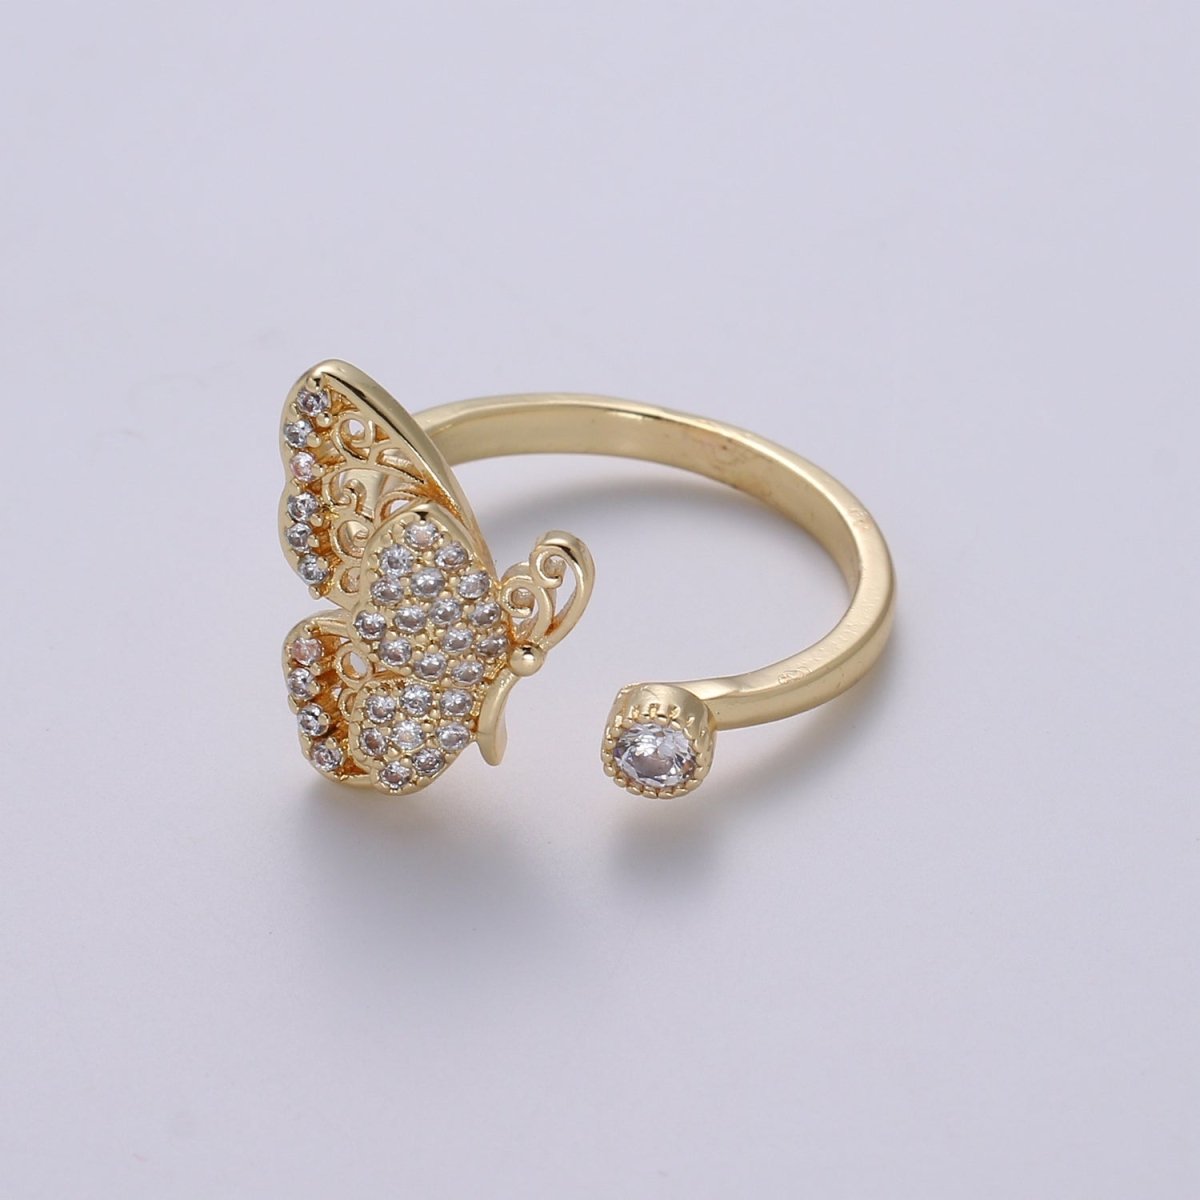 Elegant 18K Gold Filled Butterfly Adjustable Ring O-359 - DLUXCA